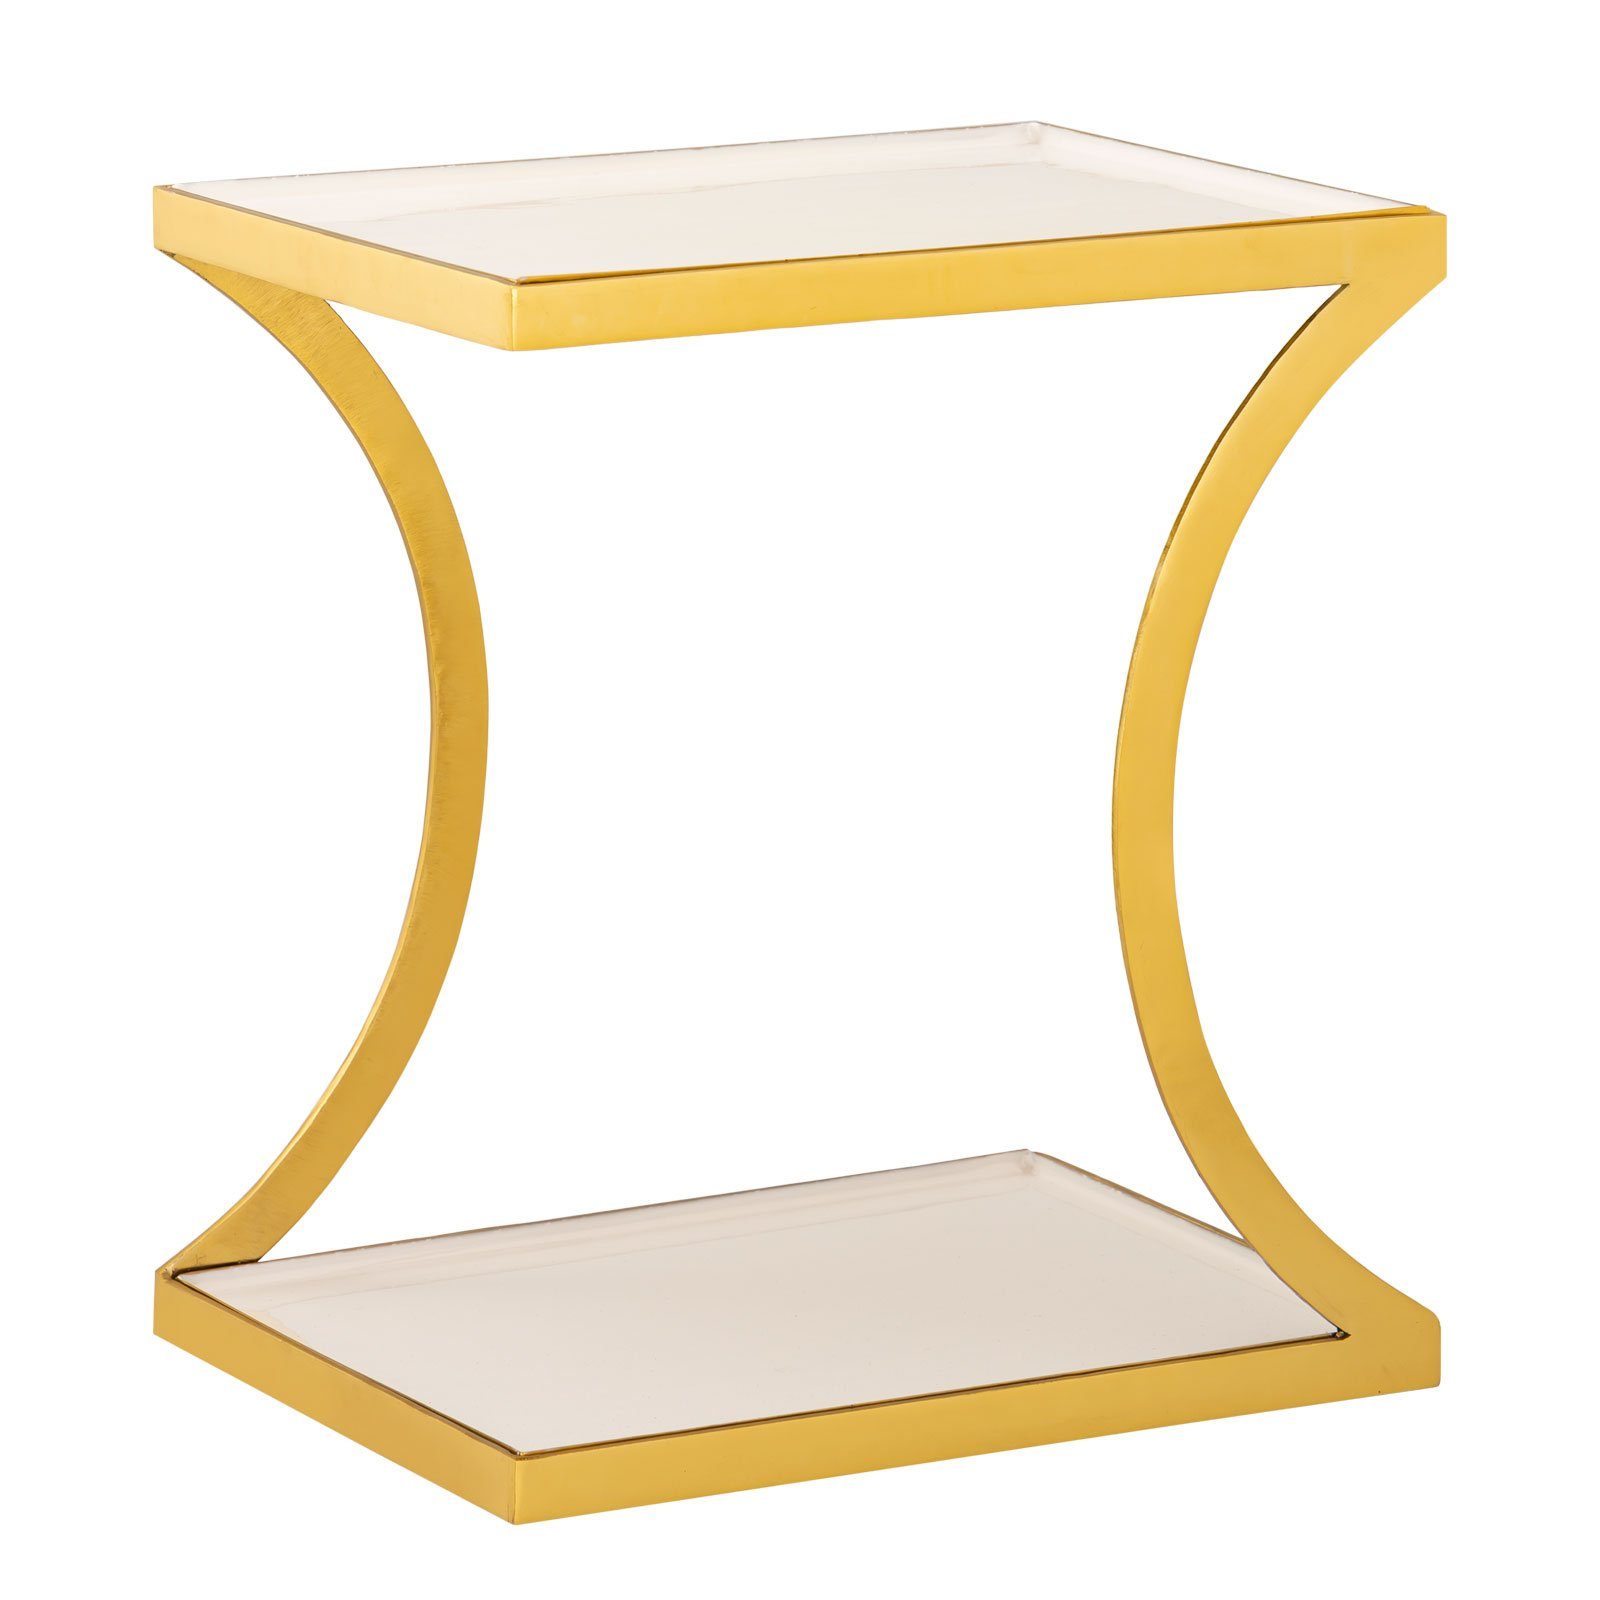 Dekotisch Beistelltisch Tisch Minara eckig Couchtisch gold Em Metall Sofatisch